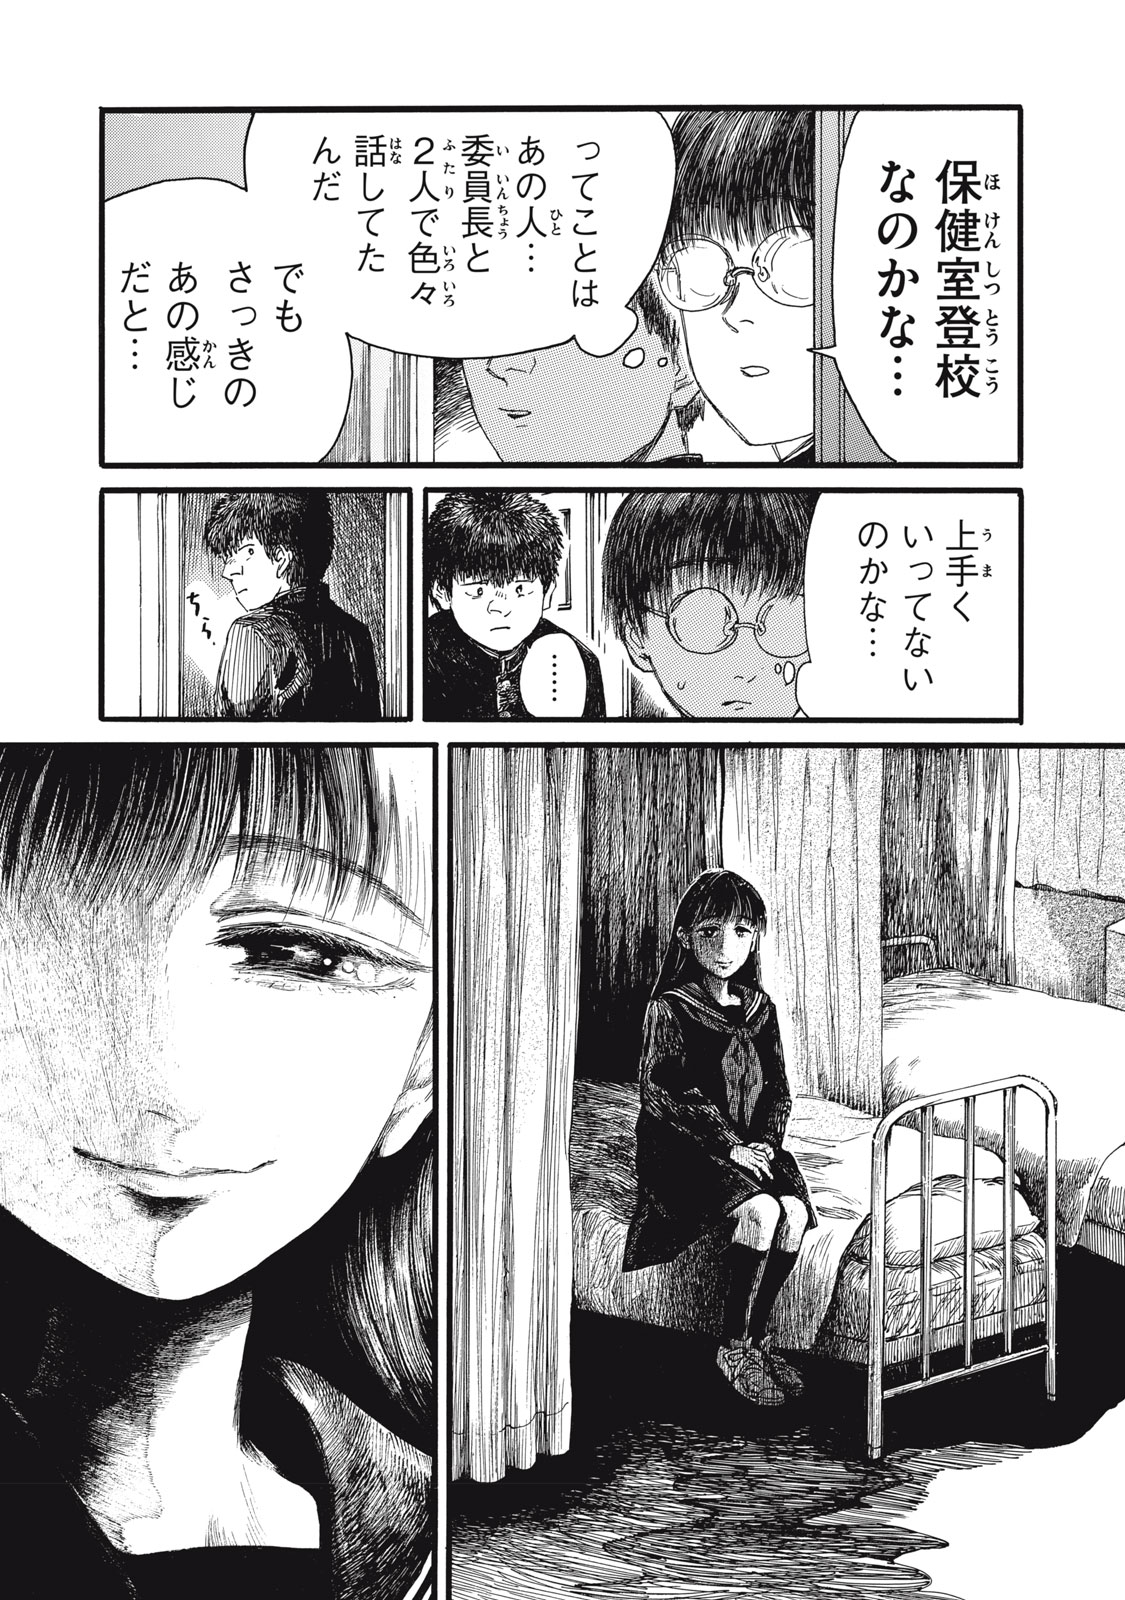 Watashi no Hara no Naka no Bakemono - Chapter 36 - Page 12